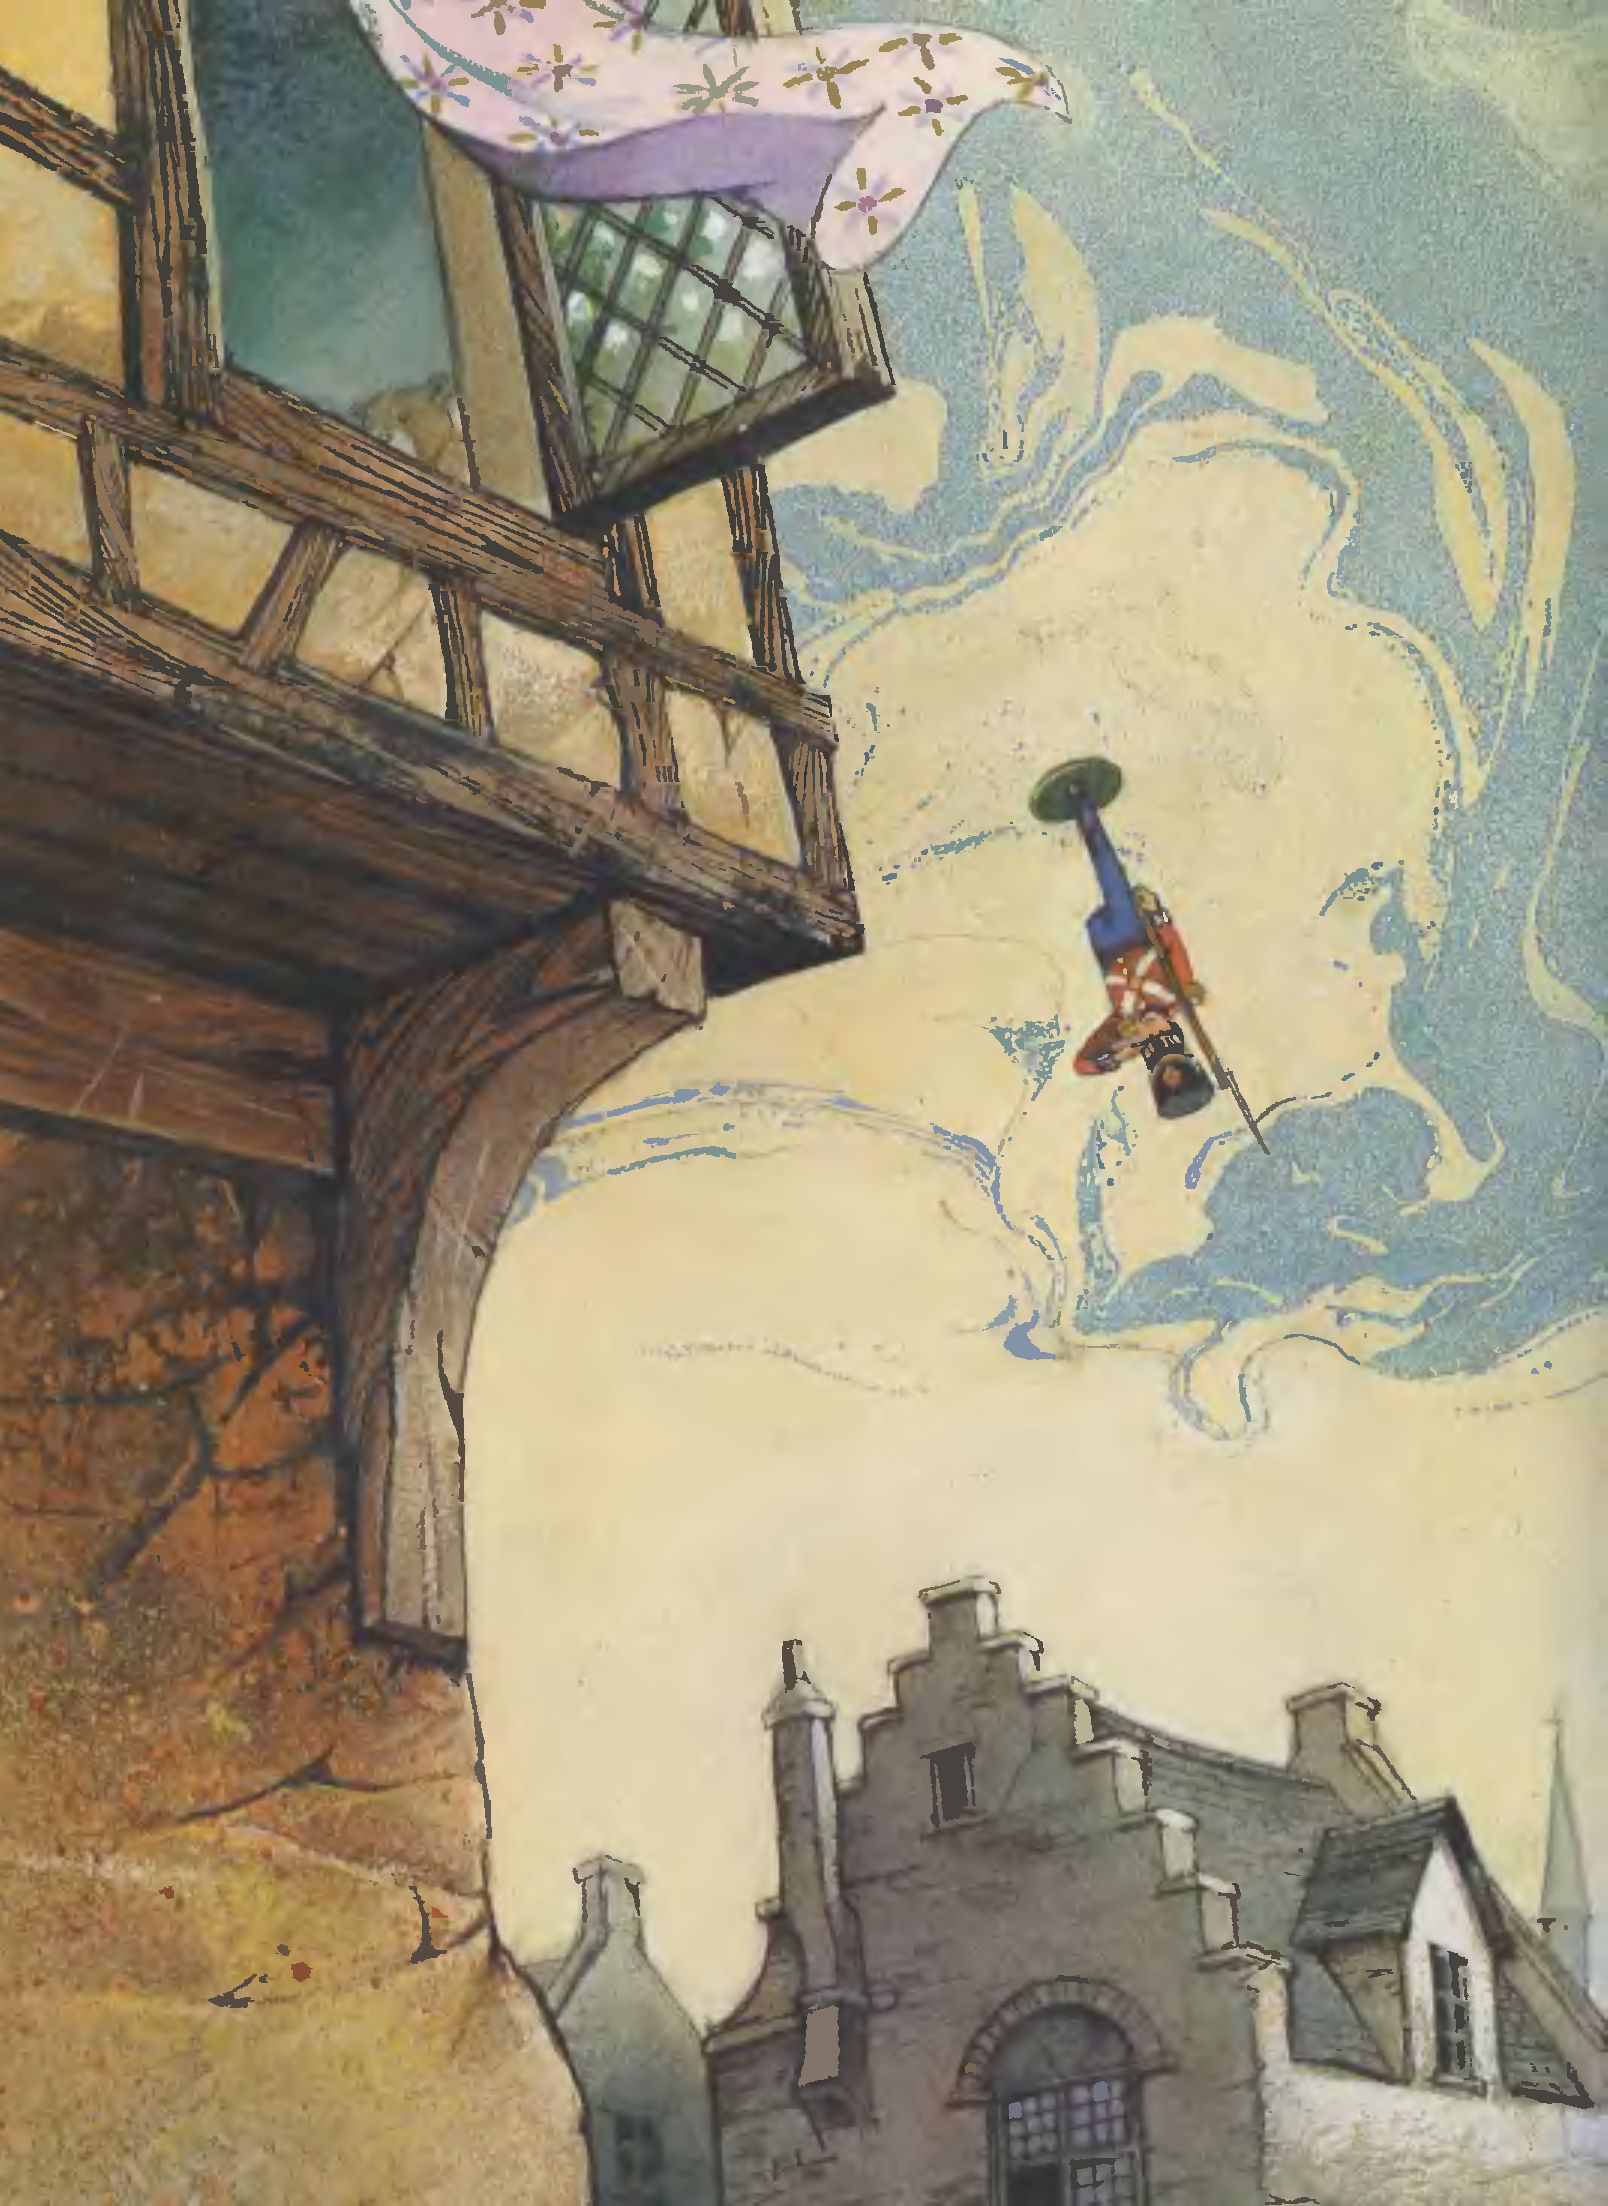 Иллюстрации Джона Пейшенса к сказке «Стойкий оловянный солдатик»